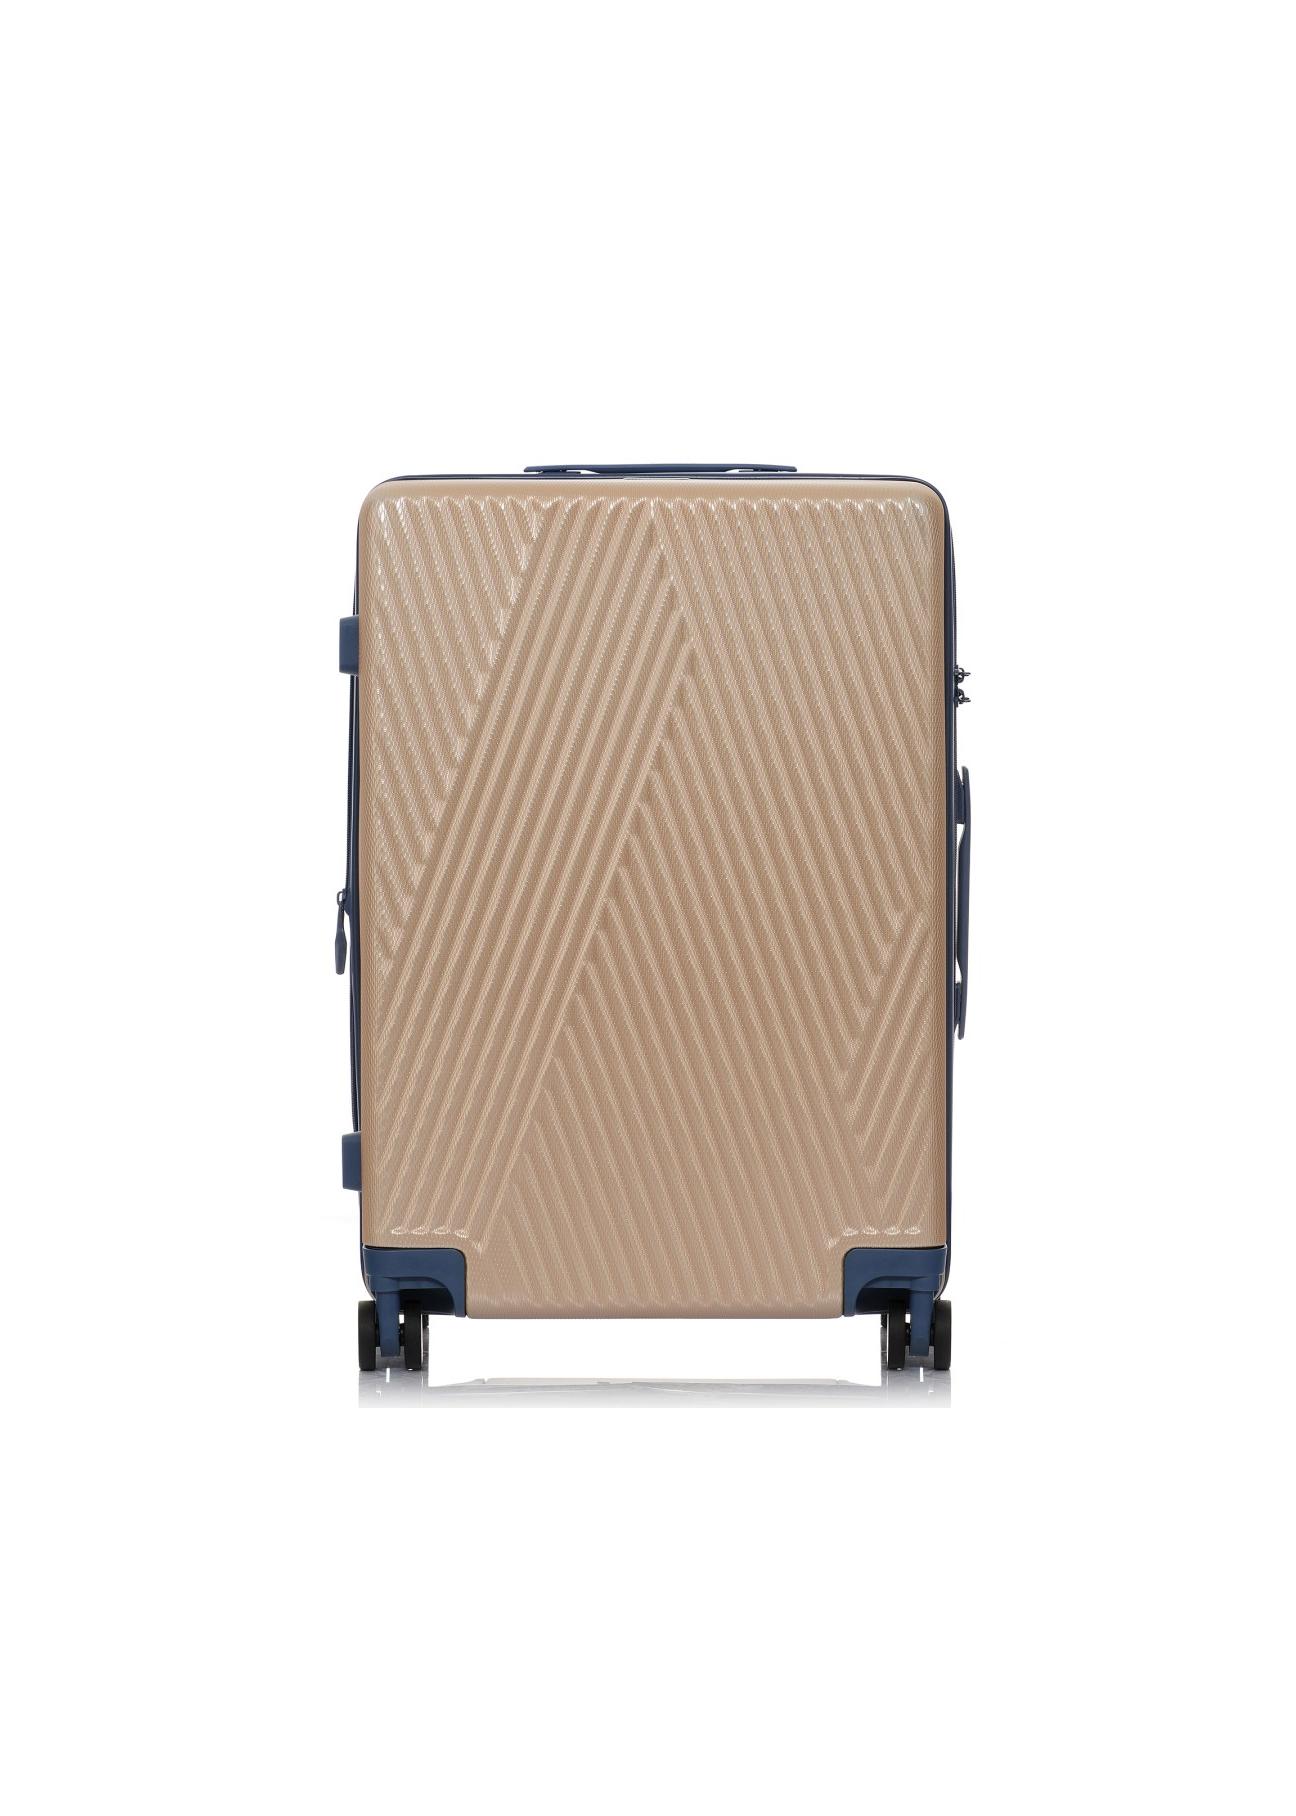 Średnia walizka na kółkach WALAB-0026-28-24